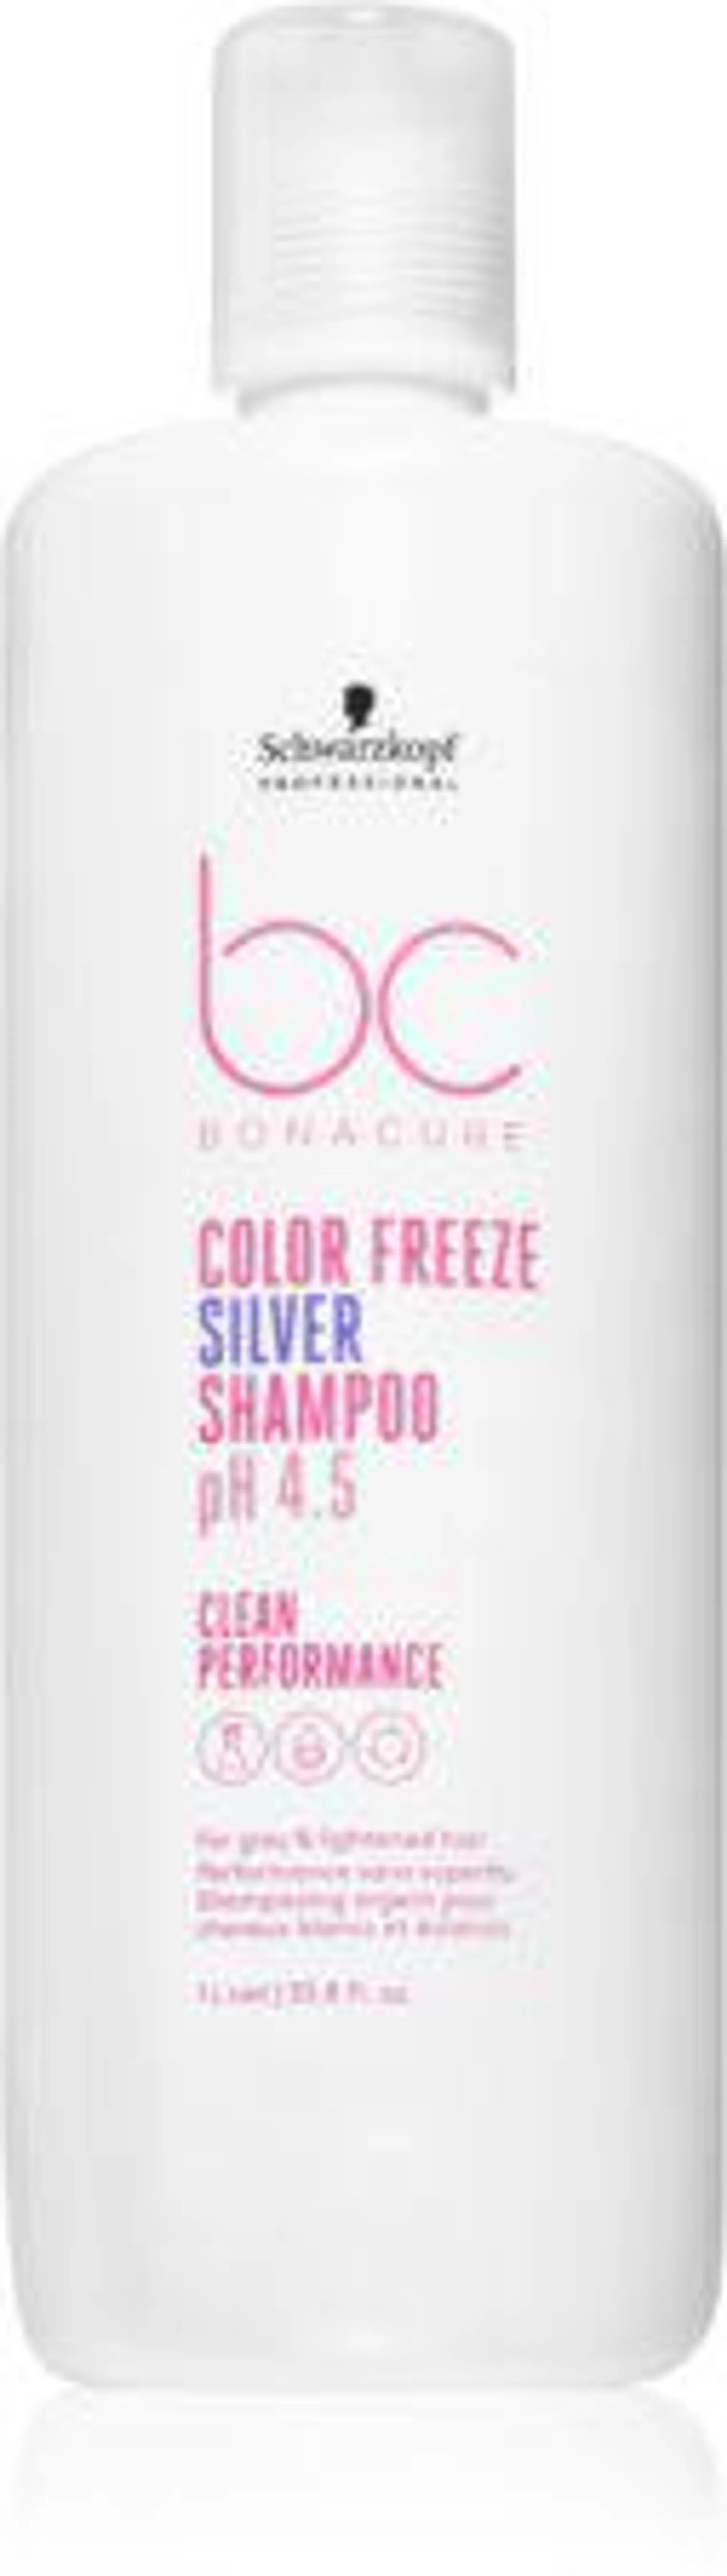 BC Bonacure Color Freeze Silver